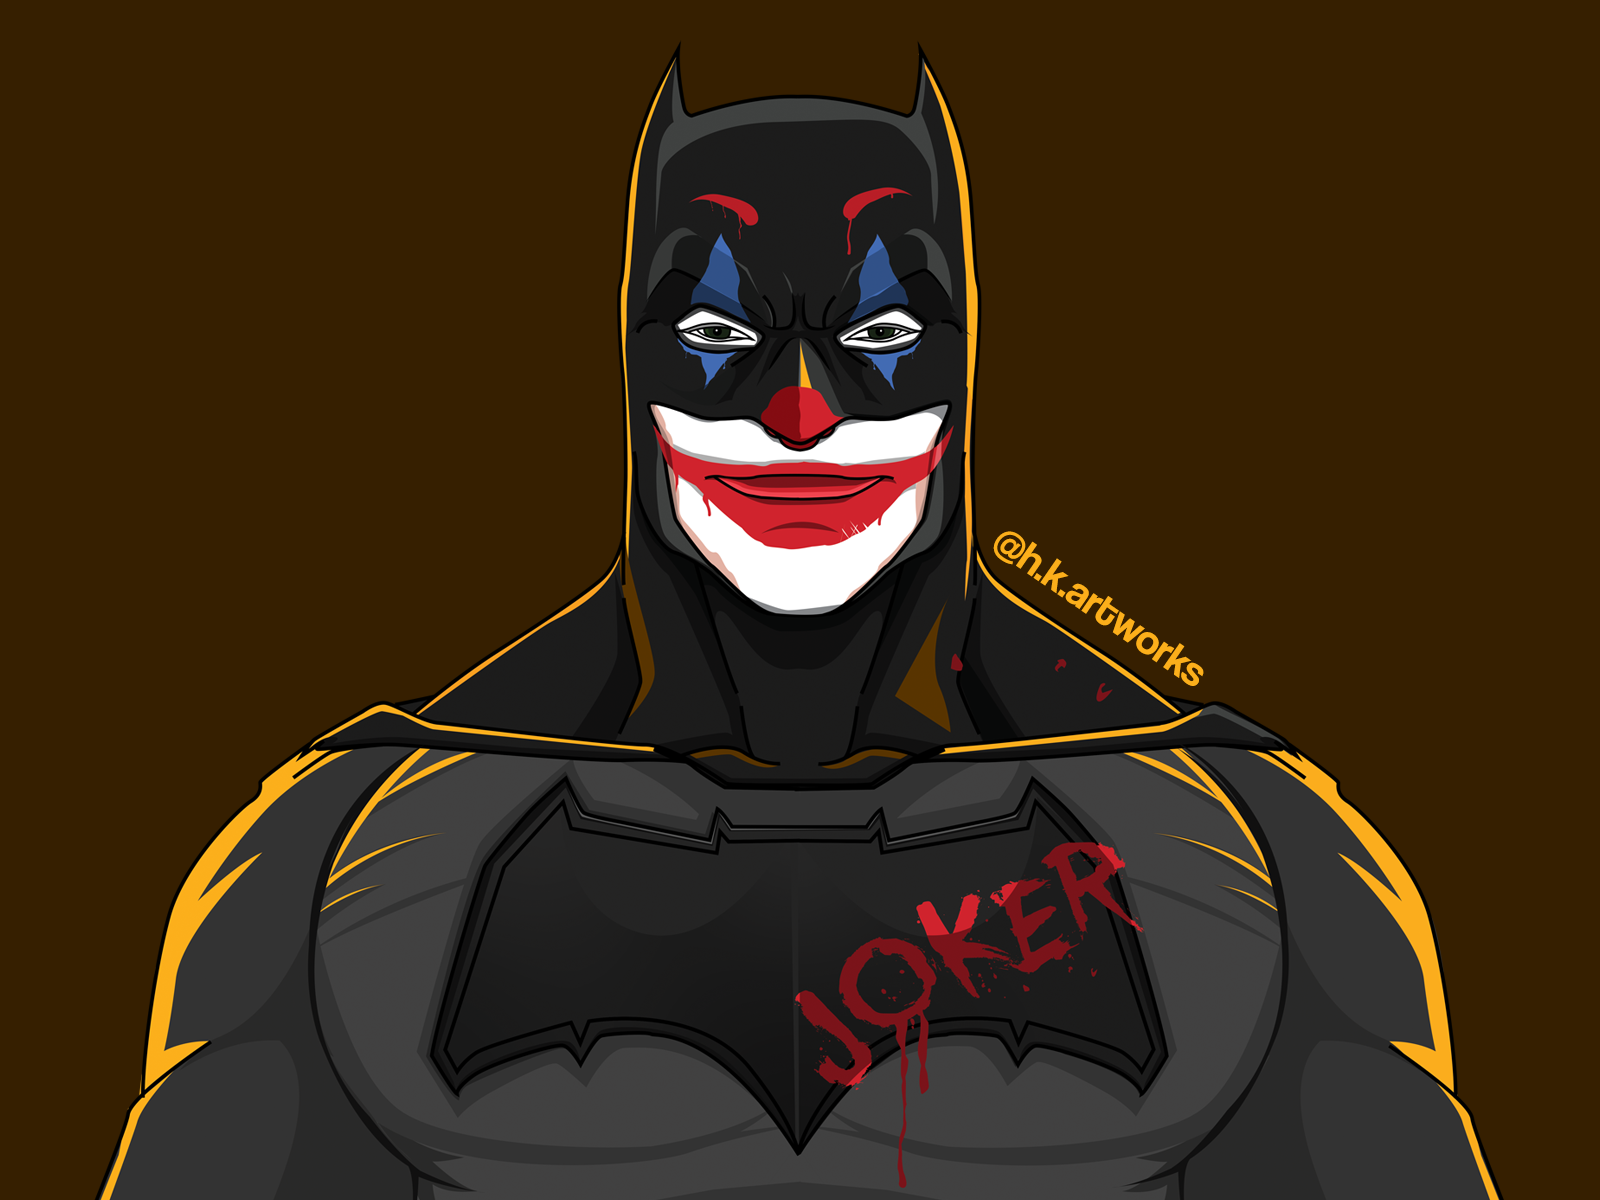 Joker - in batman suit by Hkartworks on Dribbble